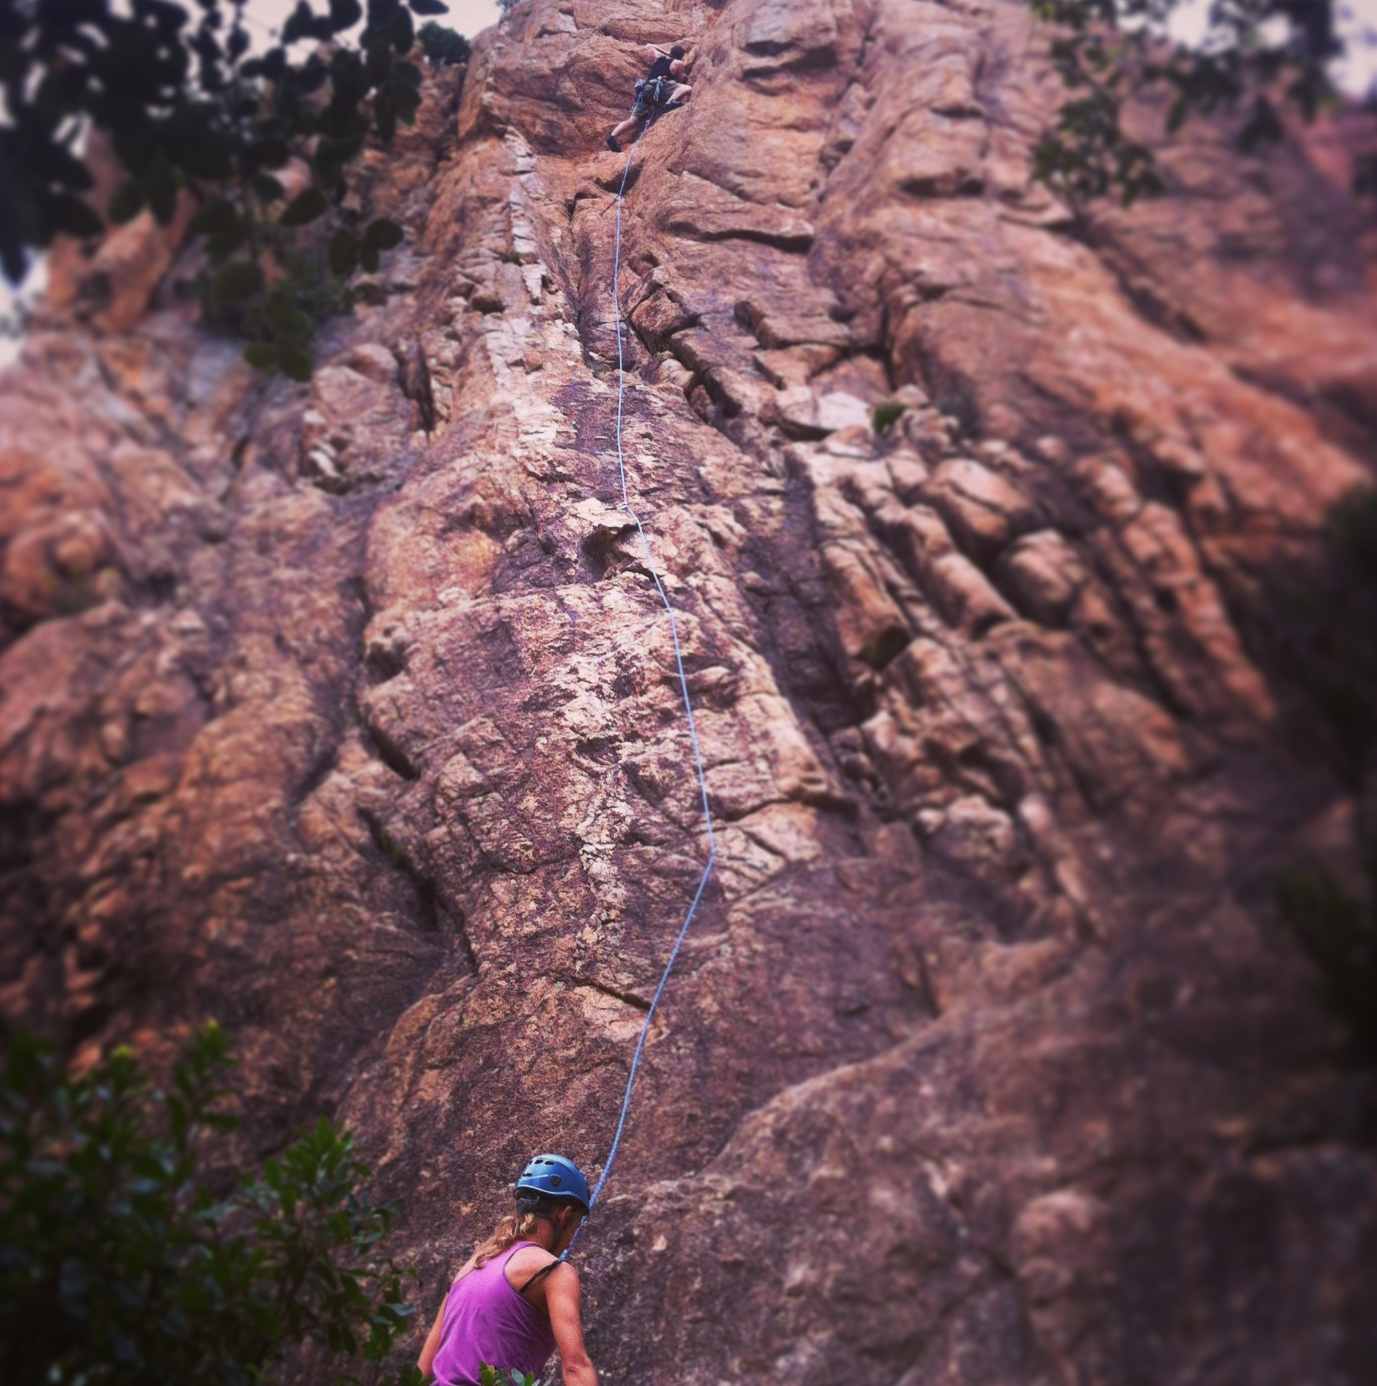 Rock climbing at Solius, Catalonia.